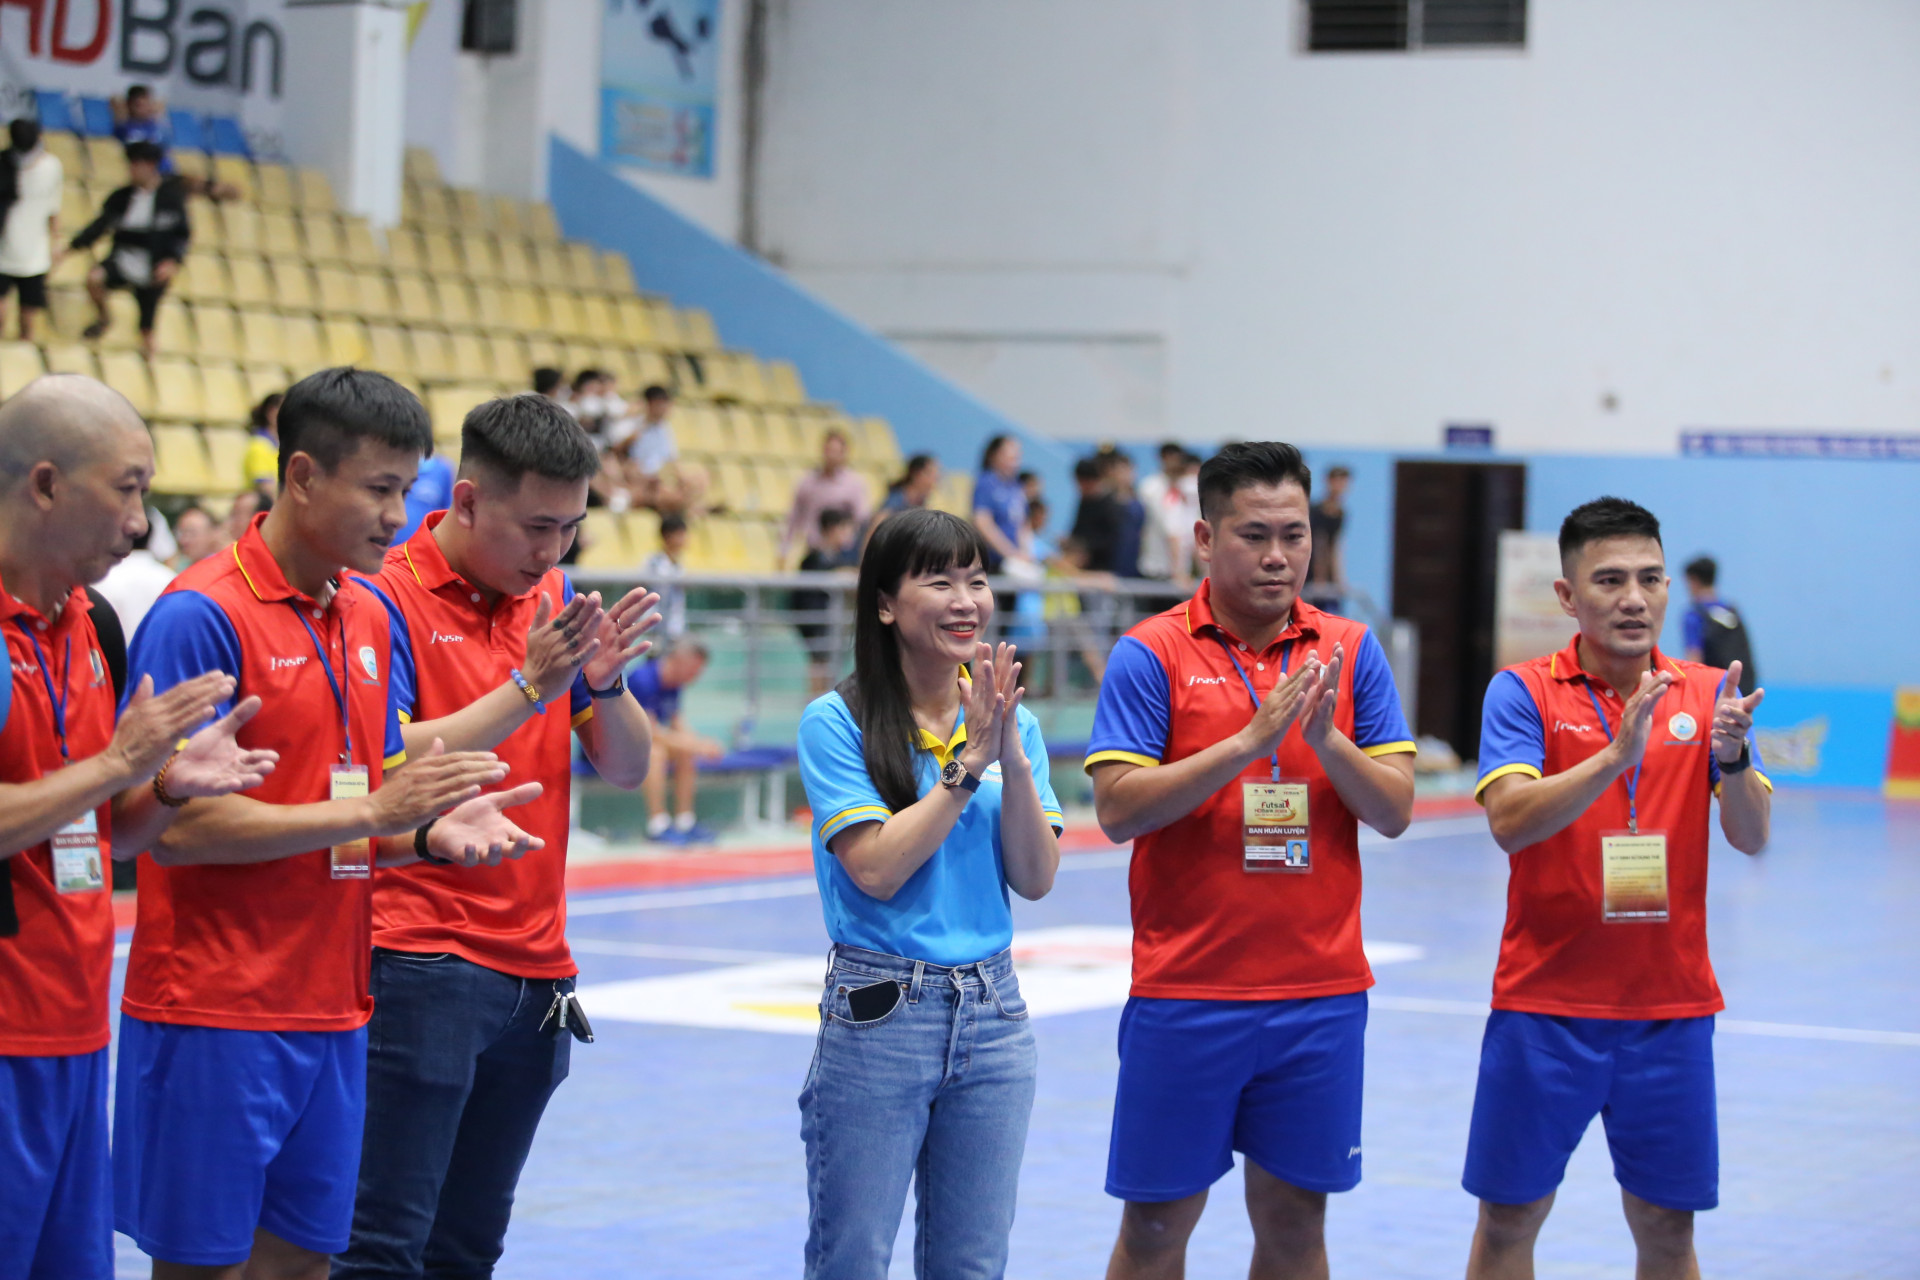 Bà Trịnh Thị Hồng Vân, Chủ tịch HĐQT Công ty Cổ phần Nước giải khát Yến Sào Khánh Hòa xuống sân động viên đội bóng sau trận đấu.